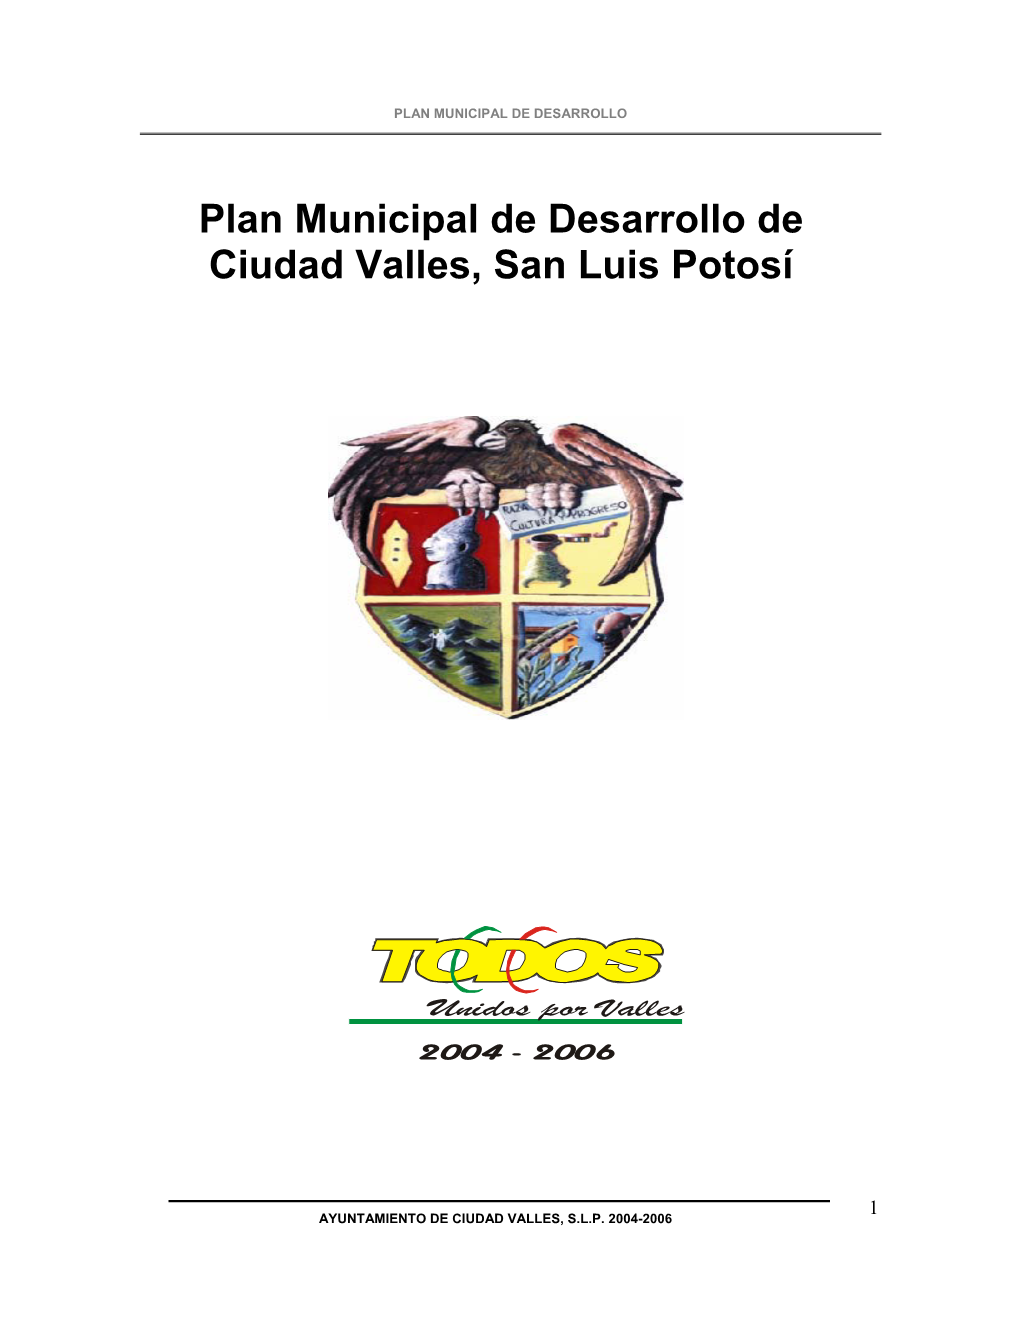 Plan Municipal De Desarrollo De Ciudad Valles, San Luis Potosí